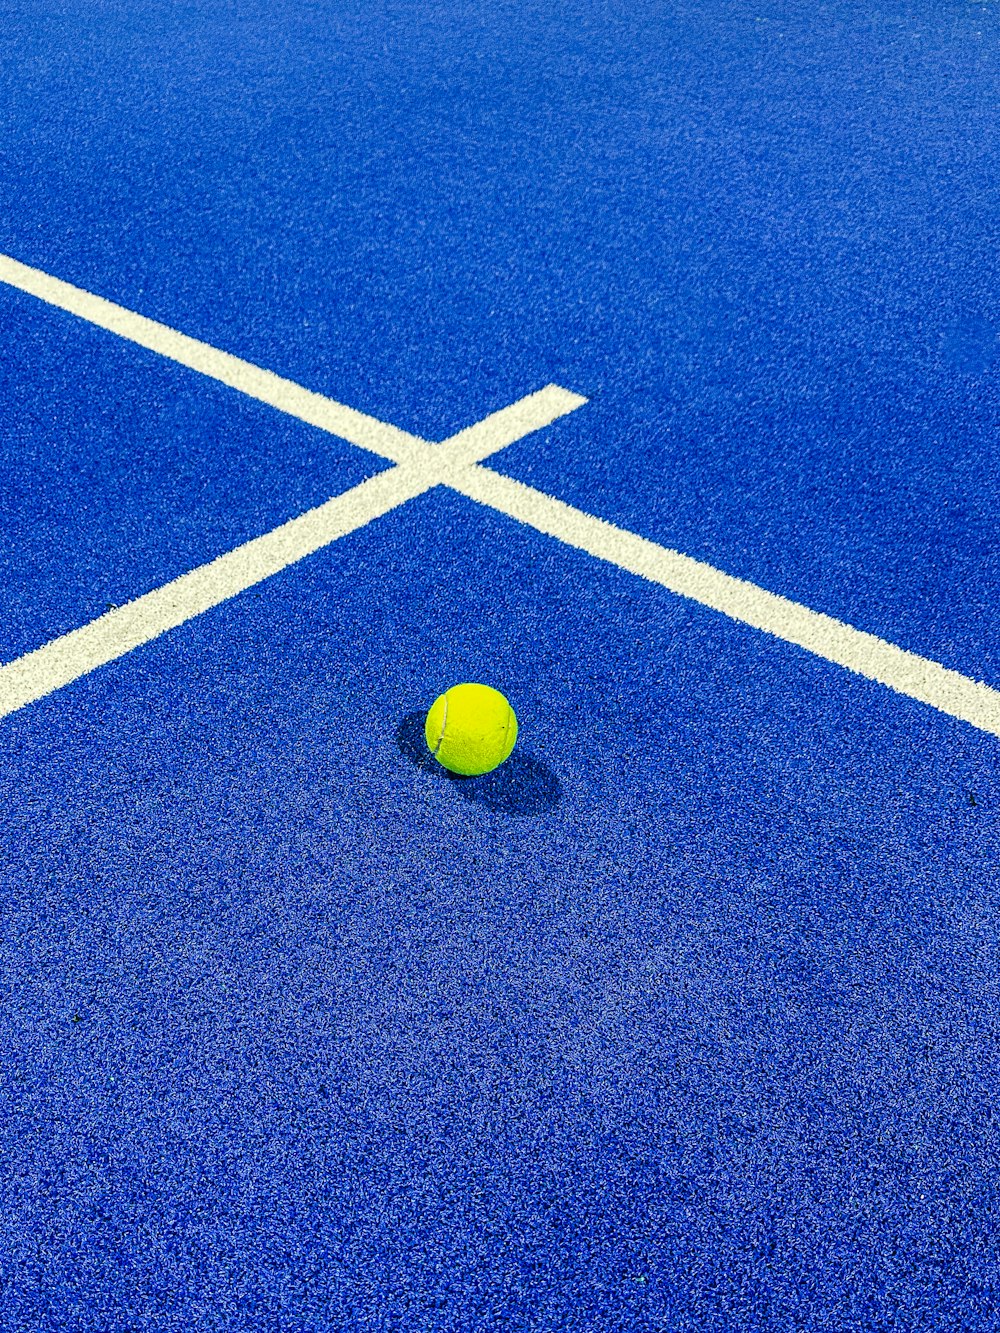 a yellow tennis ball on a blue tennis court